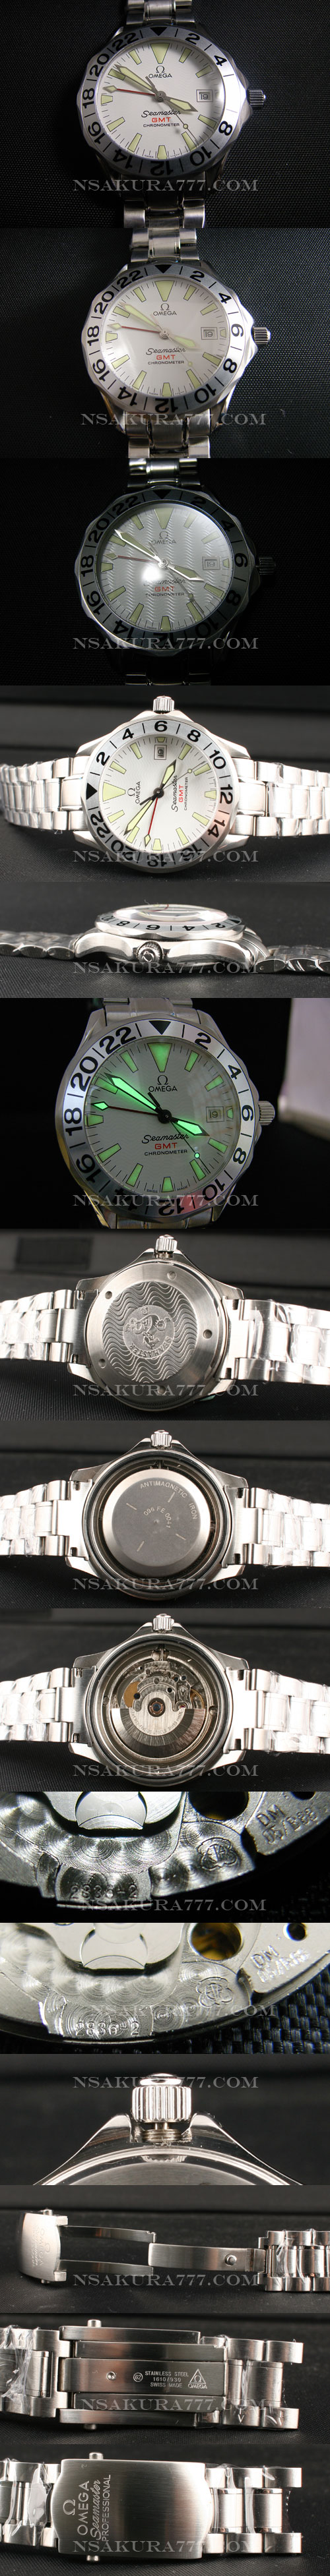 レプリカ時計オメガシーマスター自動巻最新改良白2836-2搭載 - ウインドウを閉じる